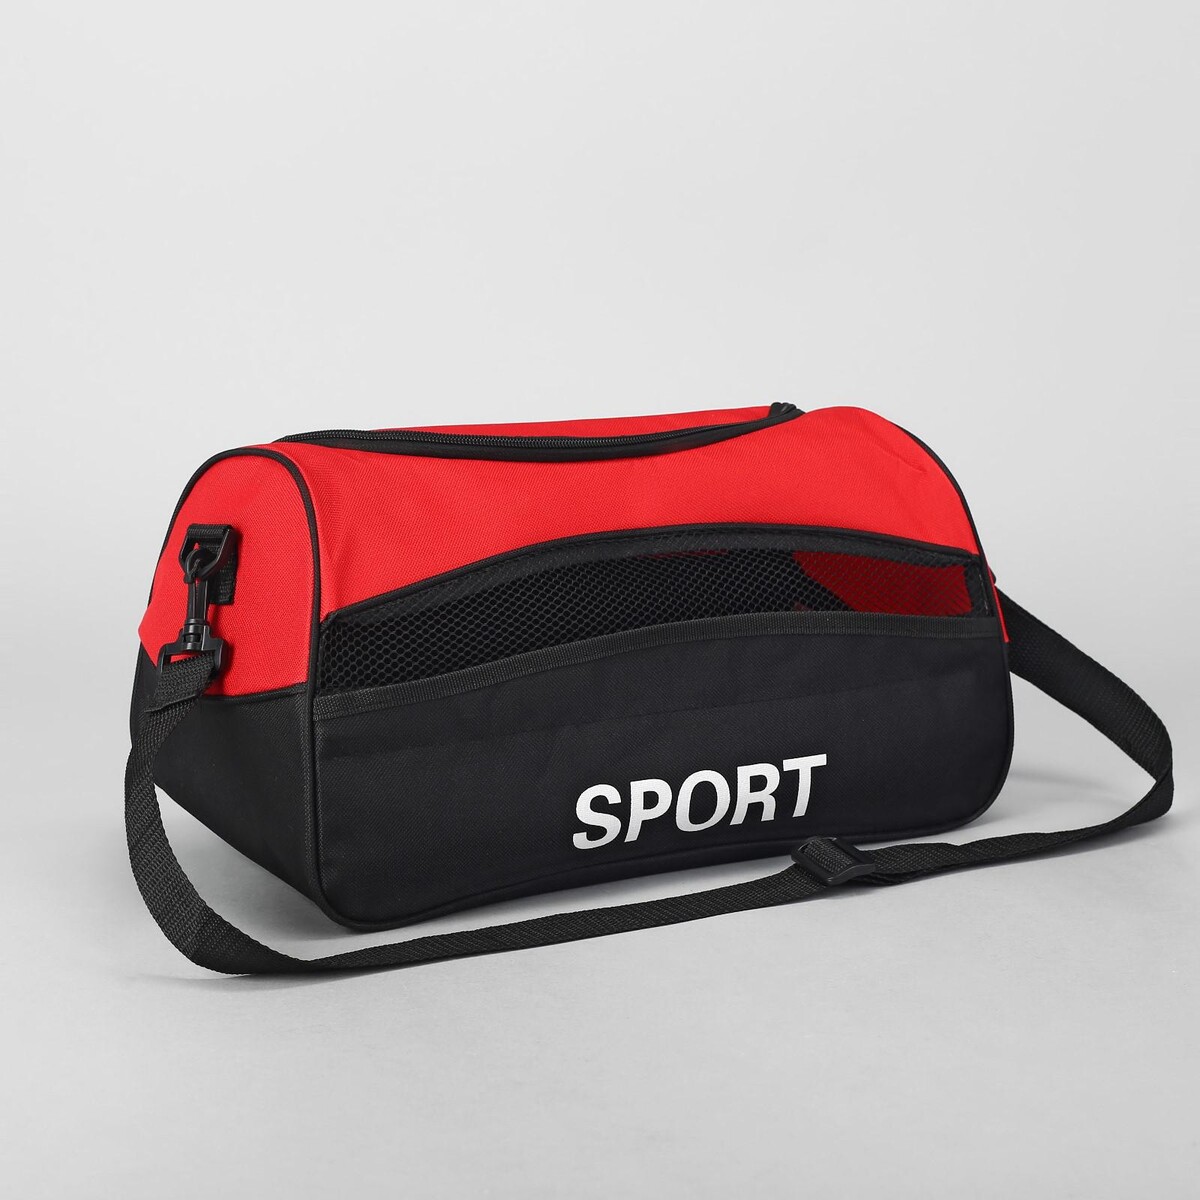 Сумка спортивная на молнии, наружный карман, длинный ремень, цвет красный/черный сумка дор l 5502 39 20 30 отд на молн н карман дл ремень серый